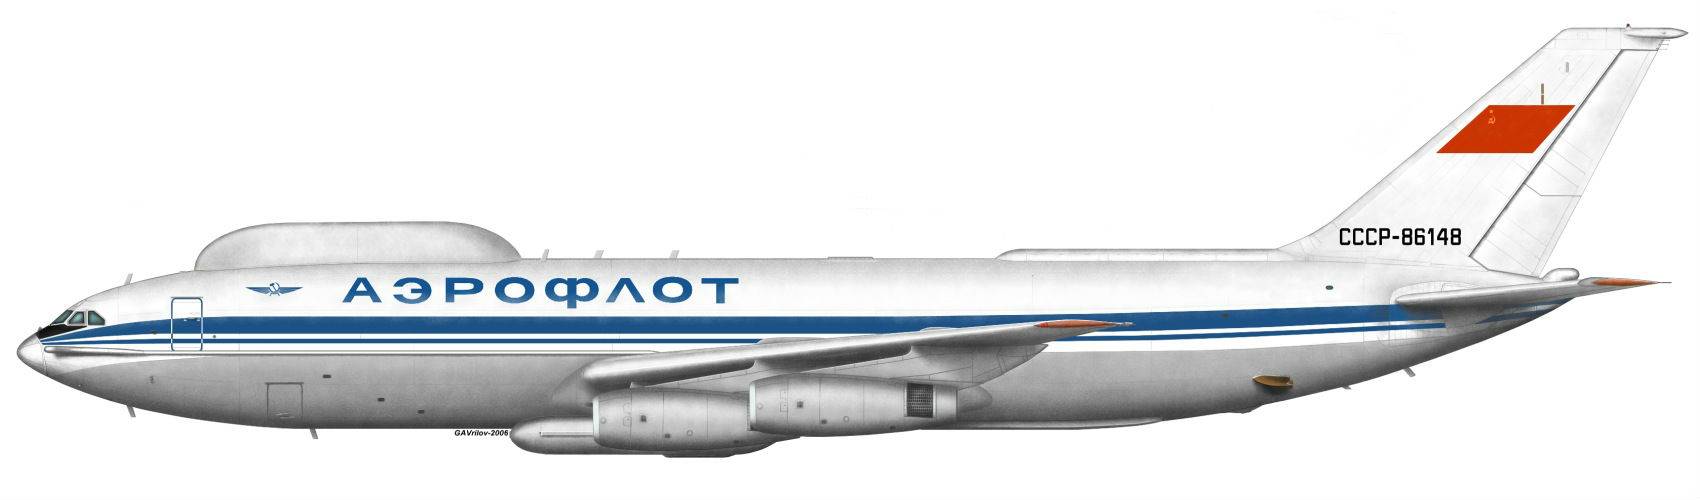 Самолет судного дня ил-80 обокрали в таганроге: подробности